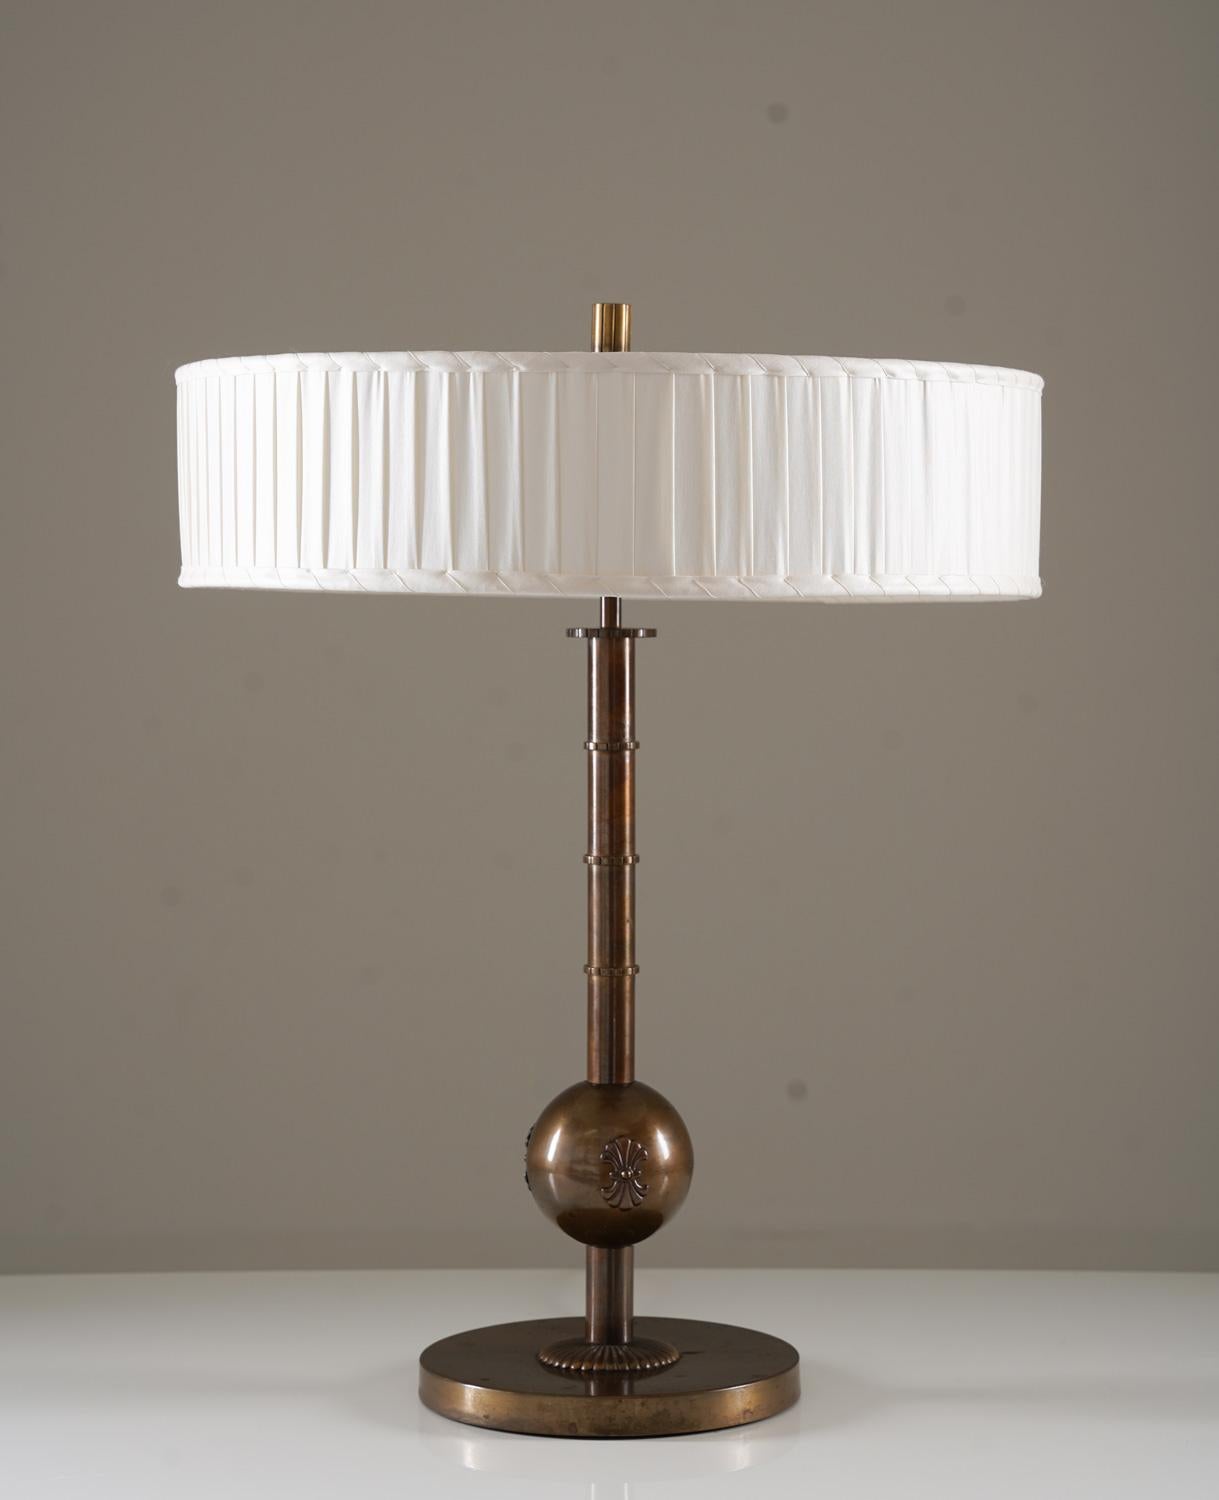 Große Tischlampe, hergestellt von Böhlmarks, Schweden, 1930er Jahre. 
Diese elegante Lampe wurde in der Zeit der schwedischen Moderne hergestellt und ist von sehr hoher Qualität.
Sie besteht aus einem schweren Sockel aus oxidiertem Messing, der eine